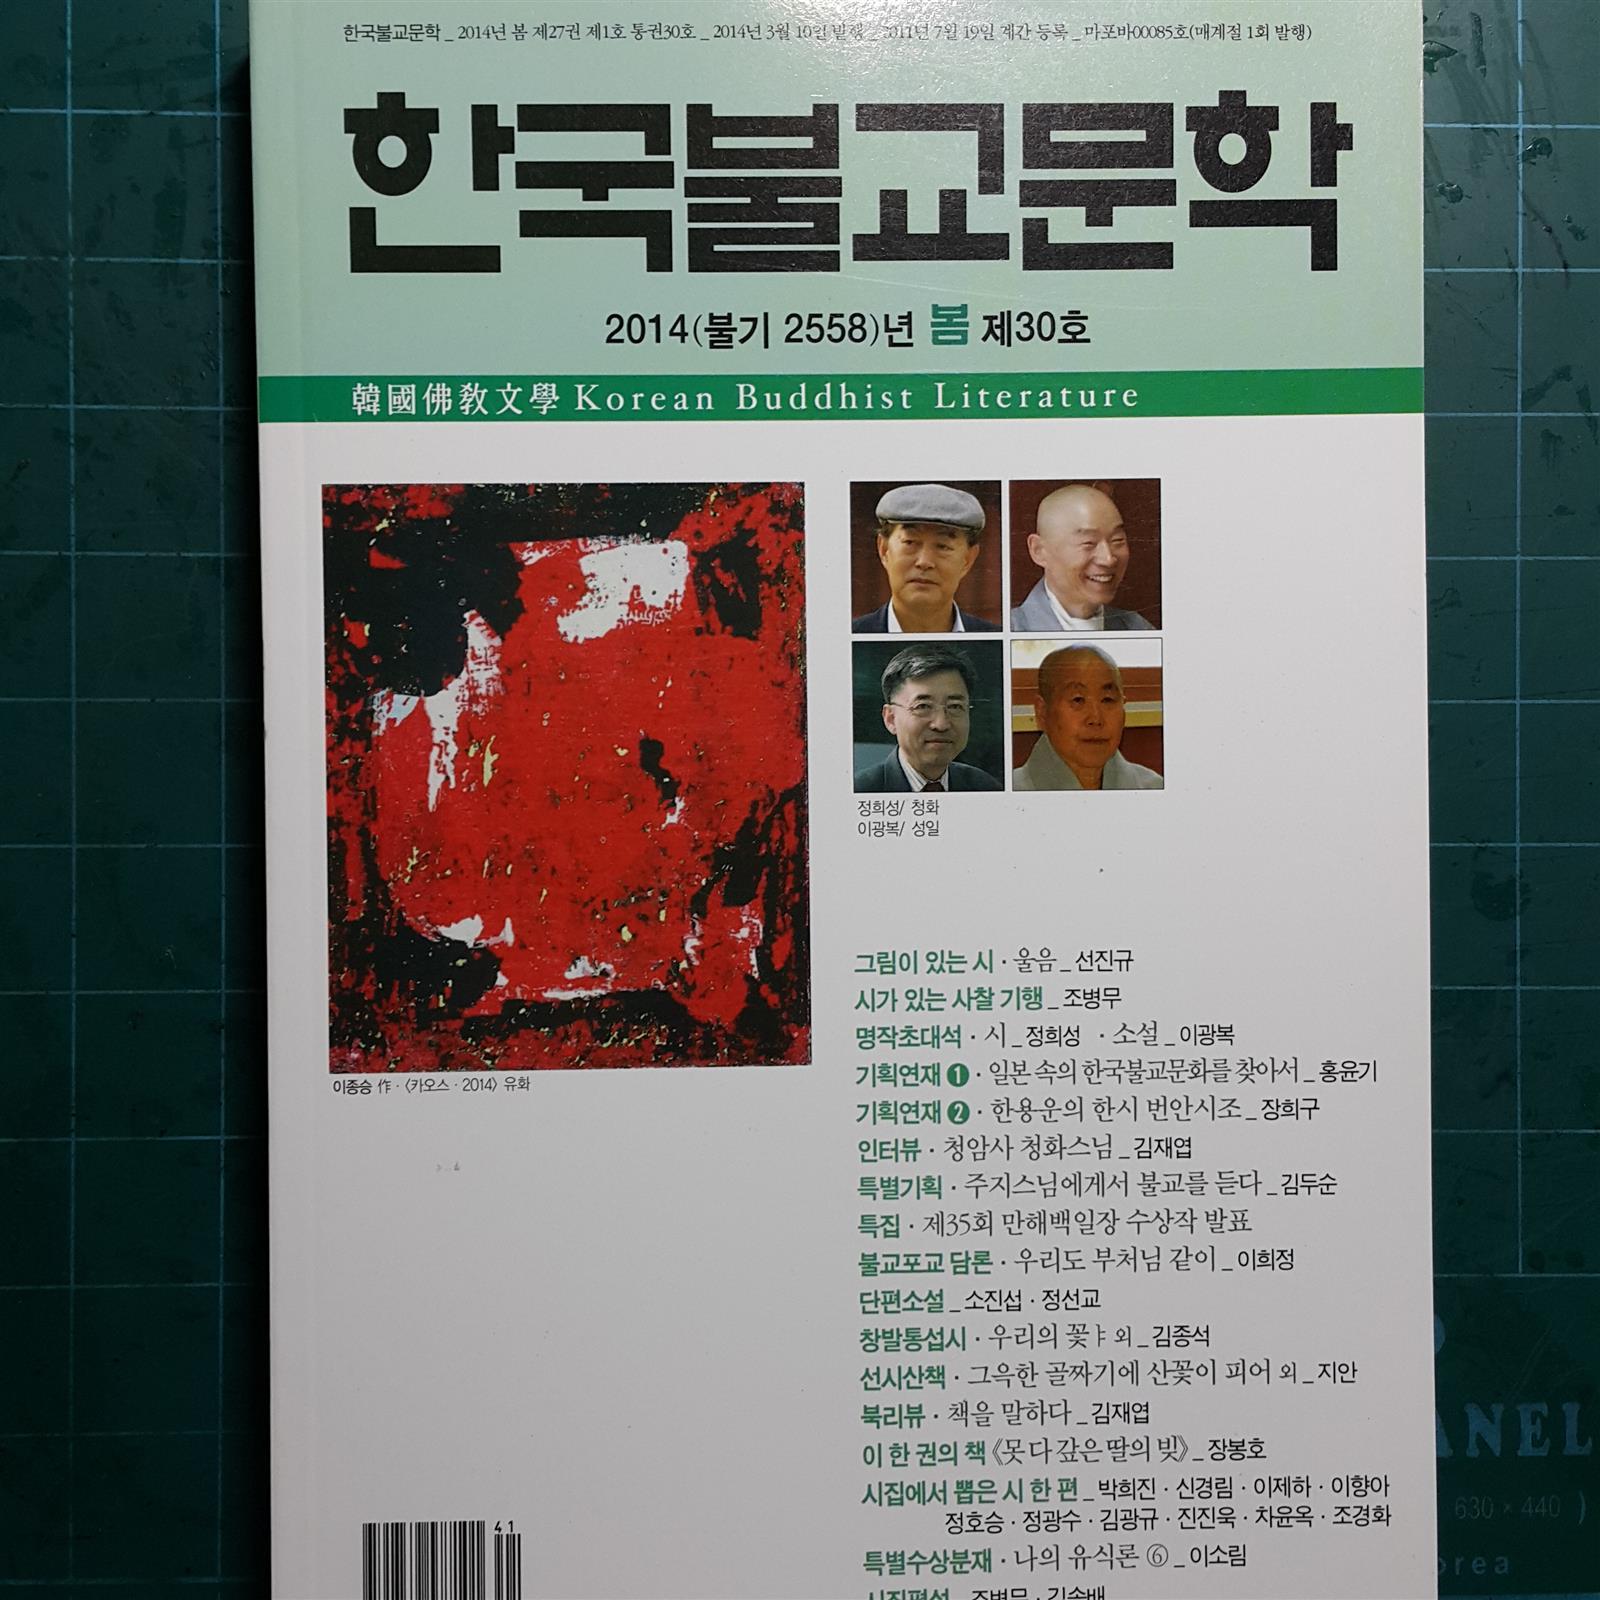 한국불교문학 -2014(불기 2558)년 봄 제30호-